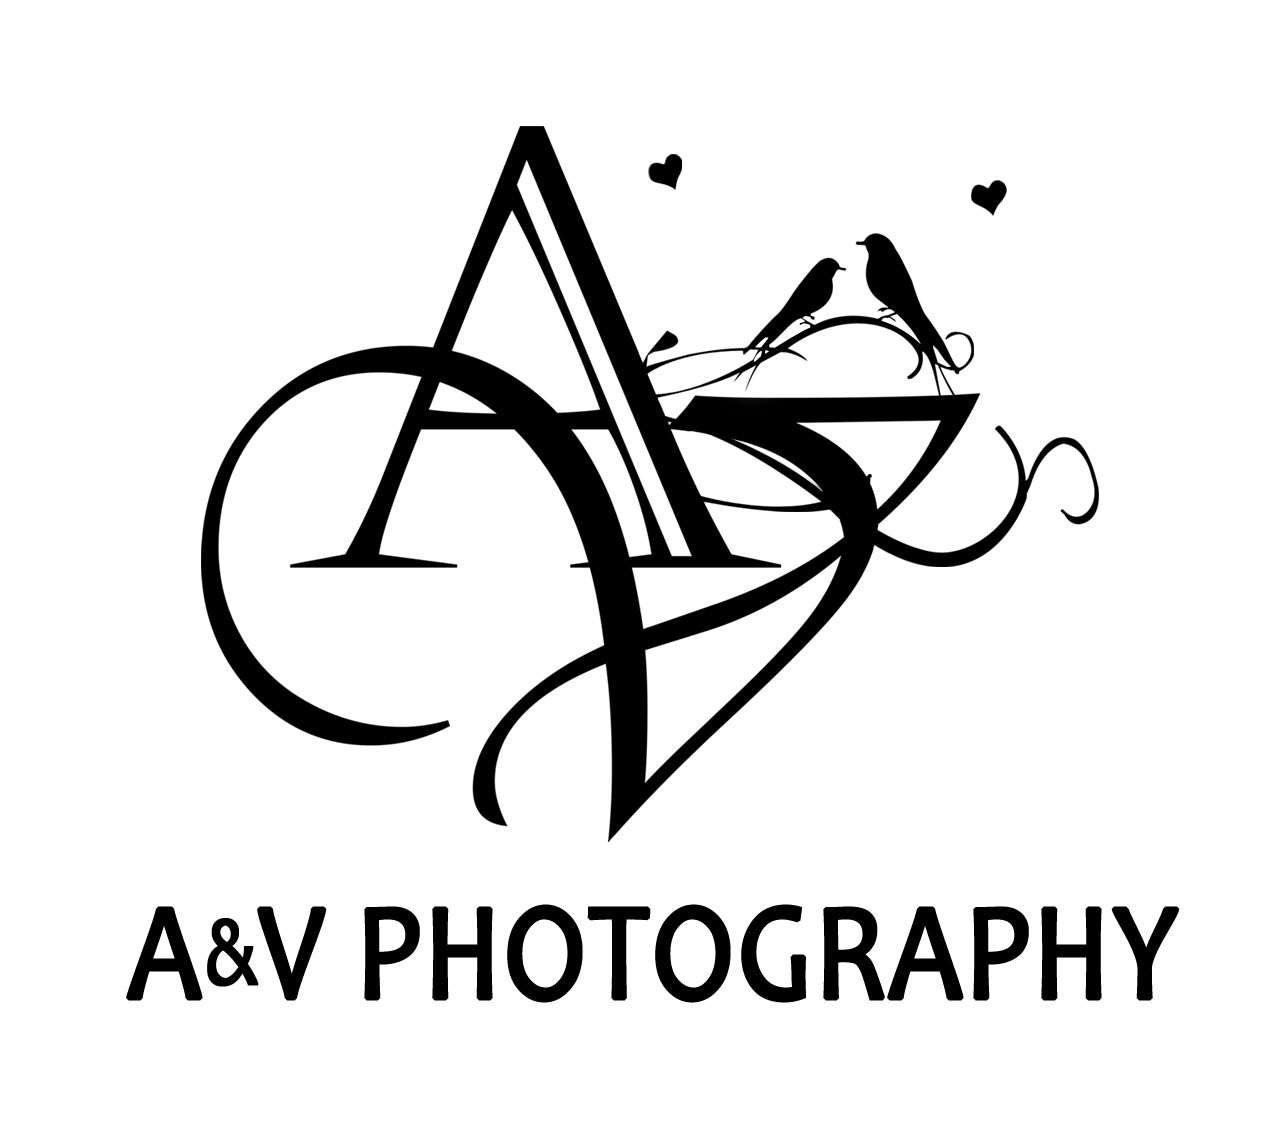 A&V Photography